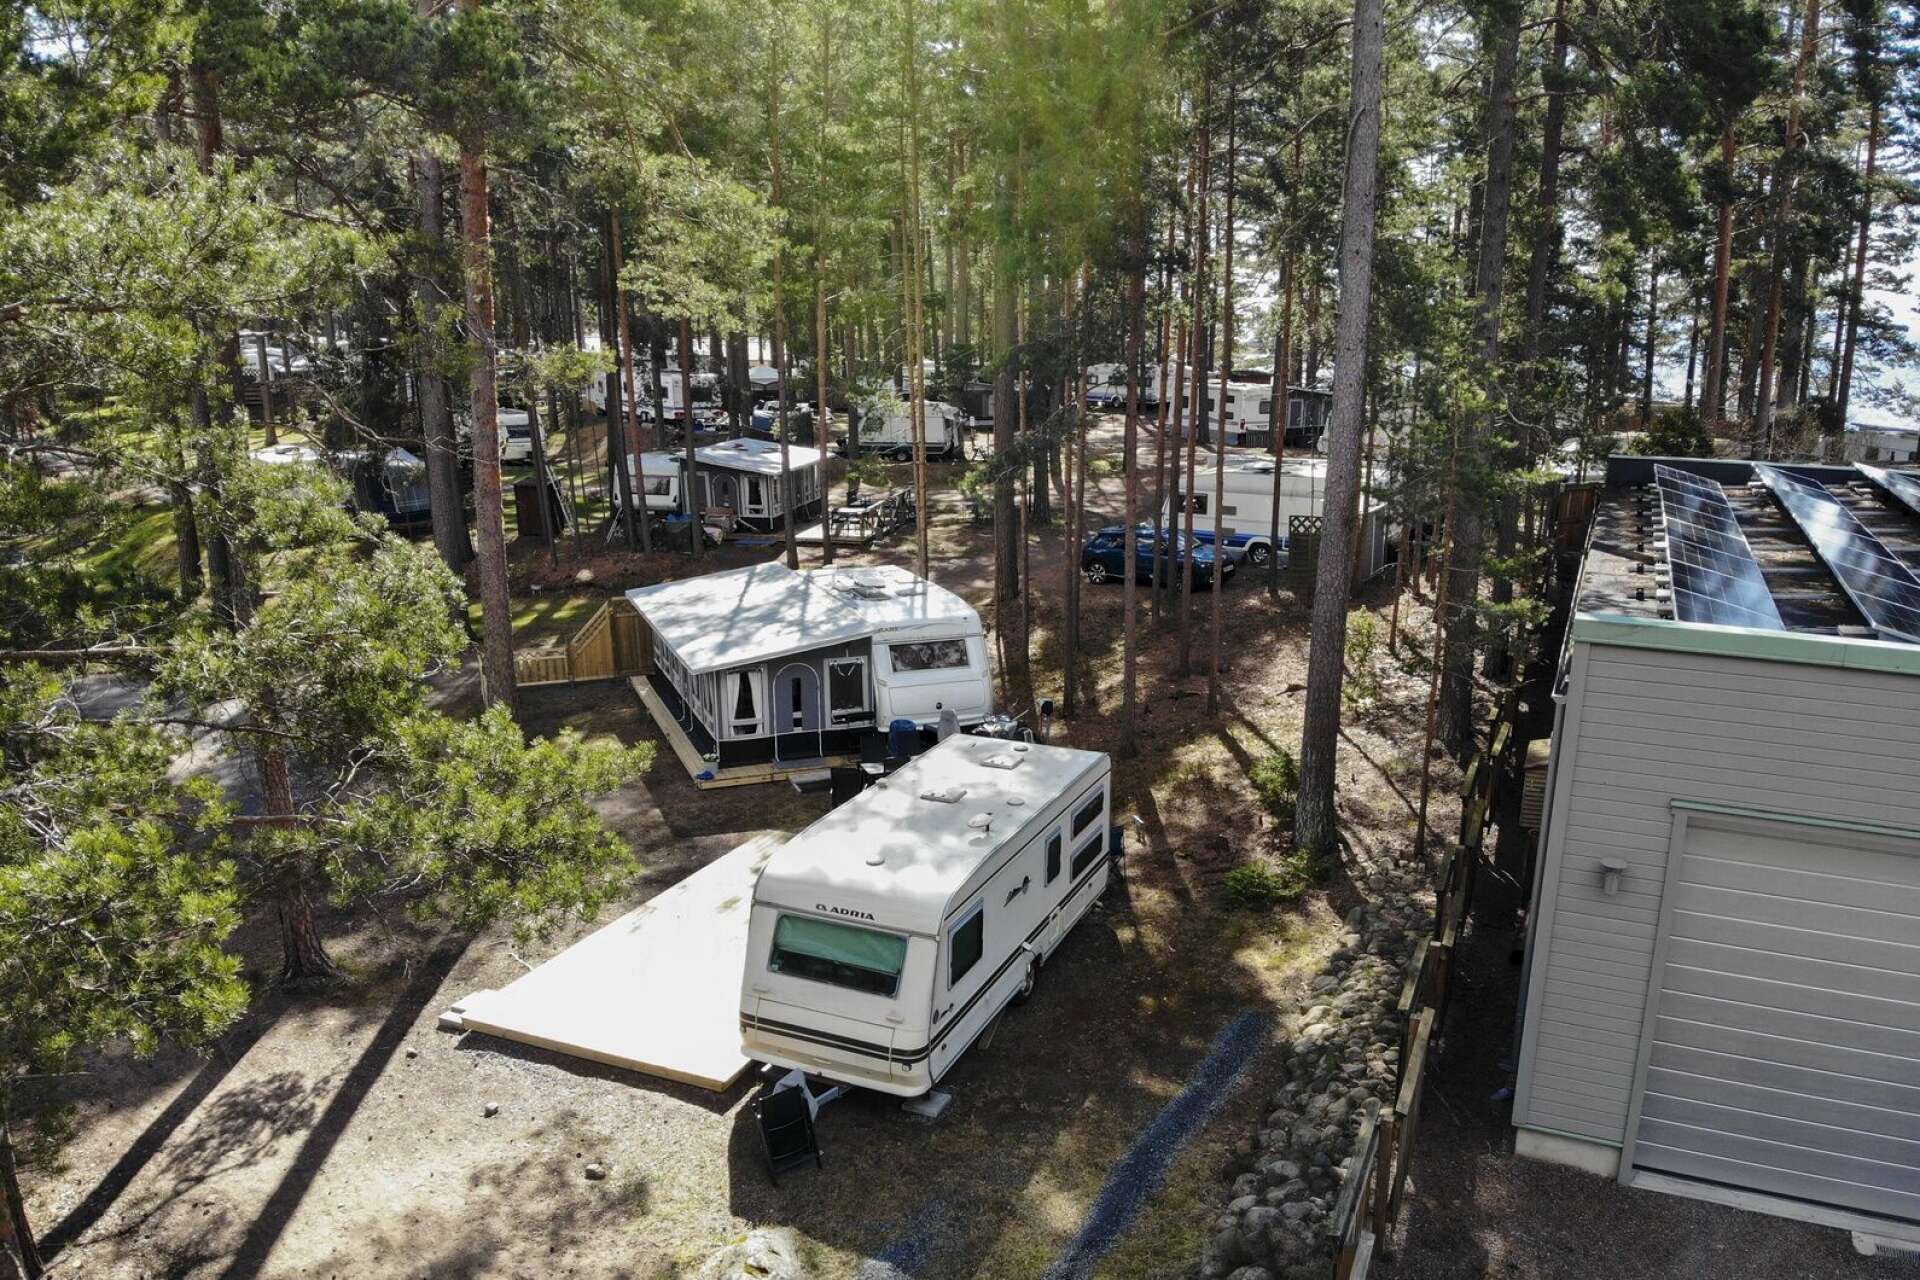 Karlstads kommun har tagit fram en ny detaljplan för Bomstadbadens camping där inte den södra udden längre ingår.